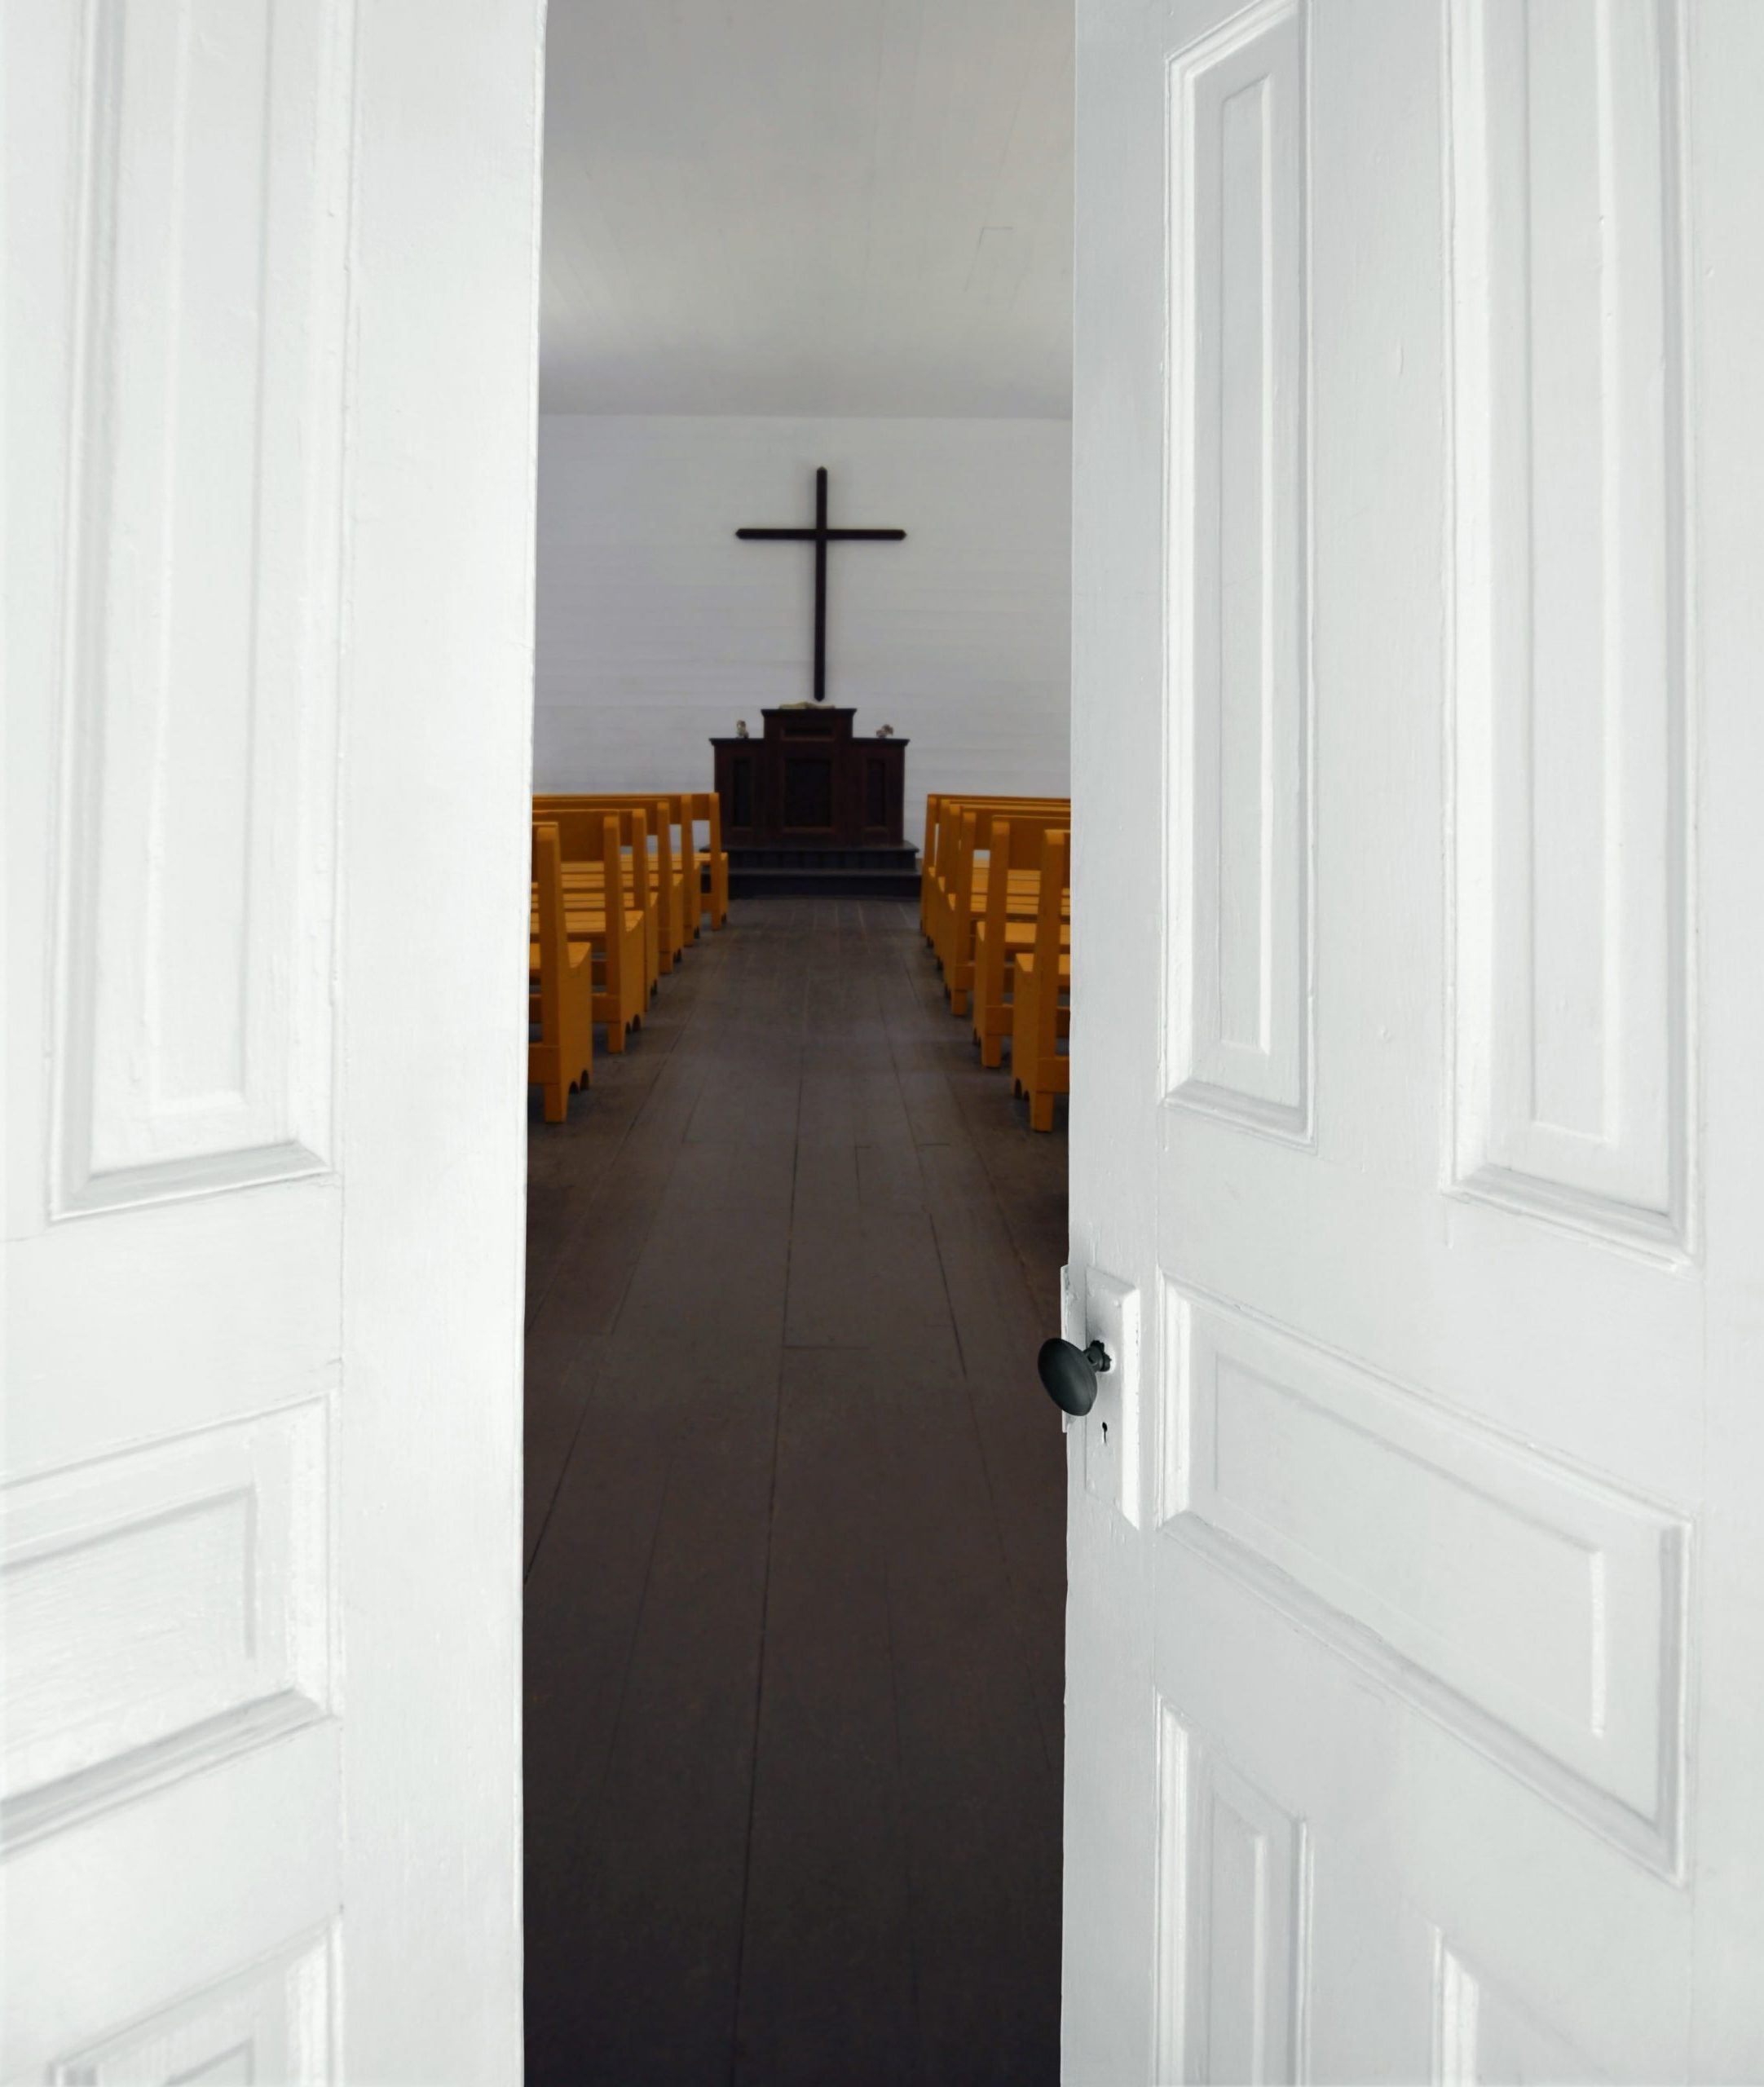 Open Church Doors